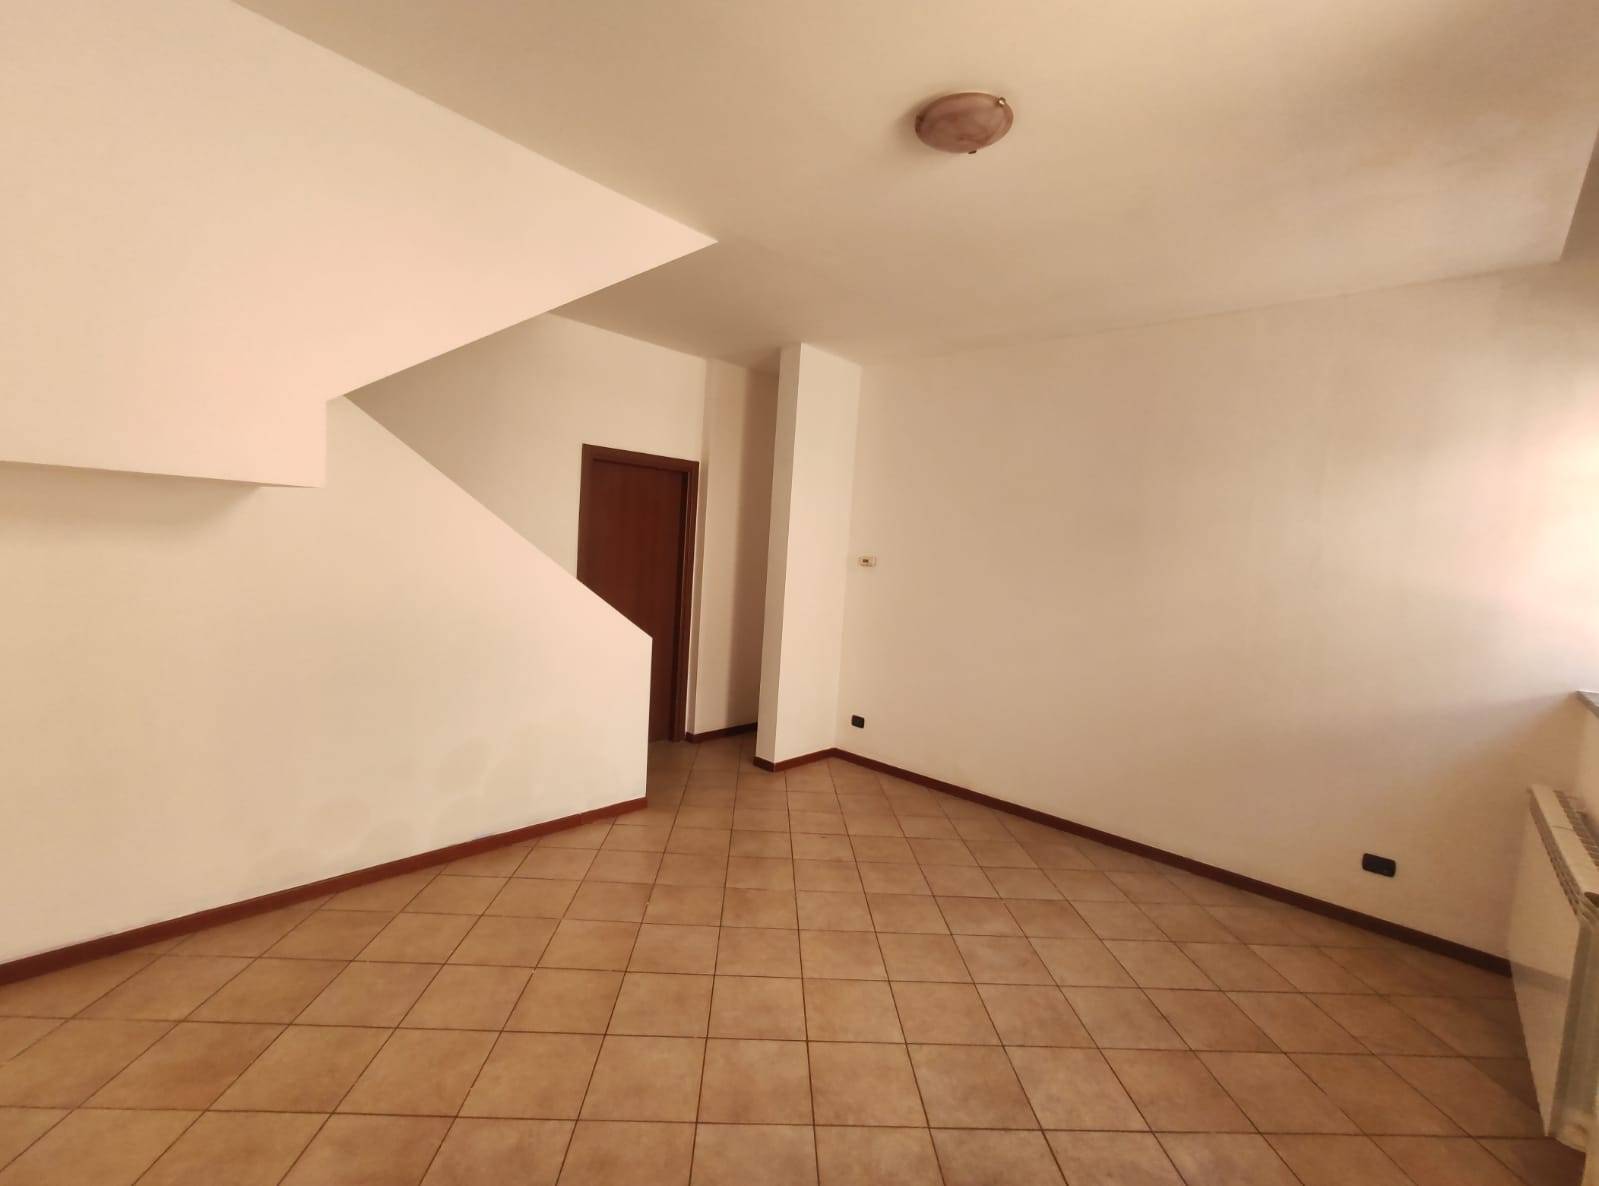 Appartamento in vendita a Marnate, 3 locali, prezzo € 90.000 | PortaleAgenzieImmobiliari.it